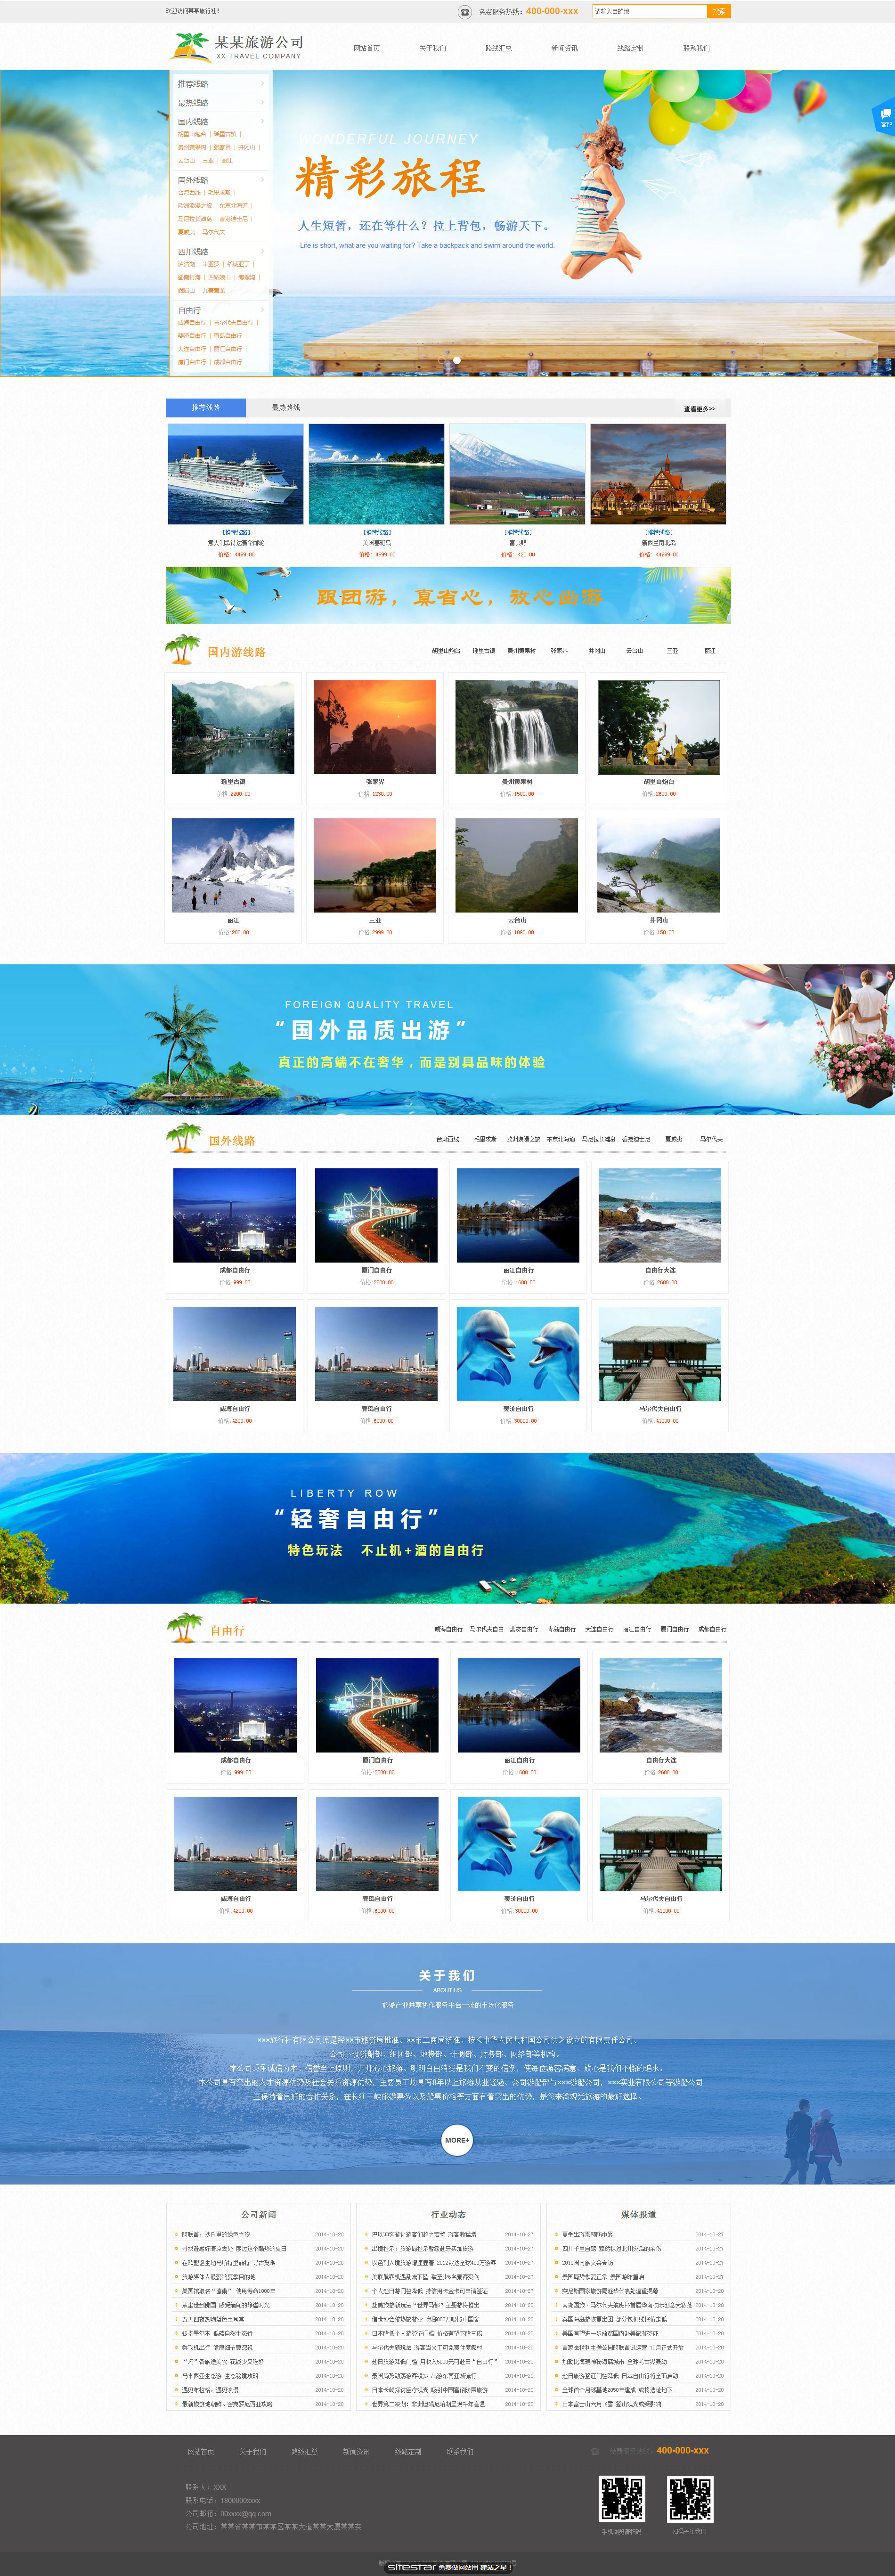 旅游、风景网站模板-travel-1136415